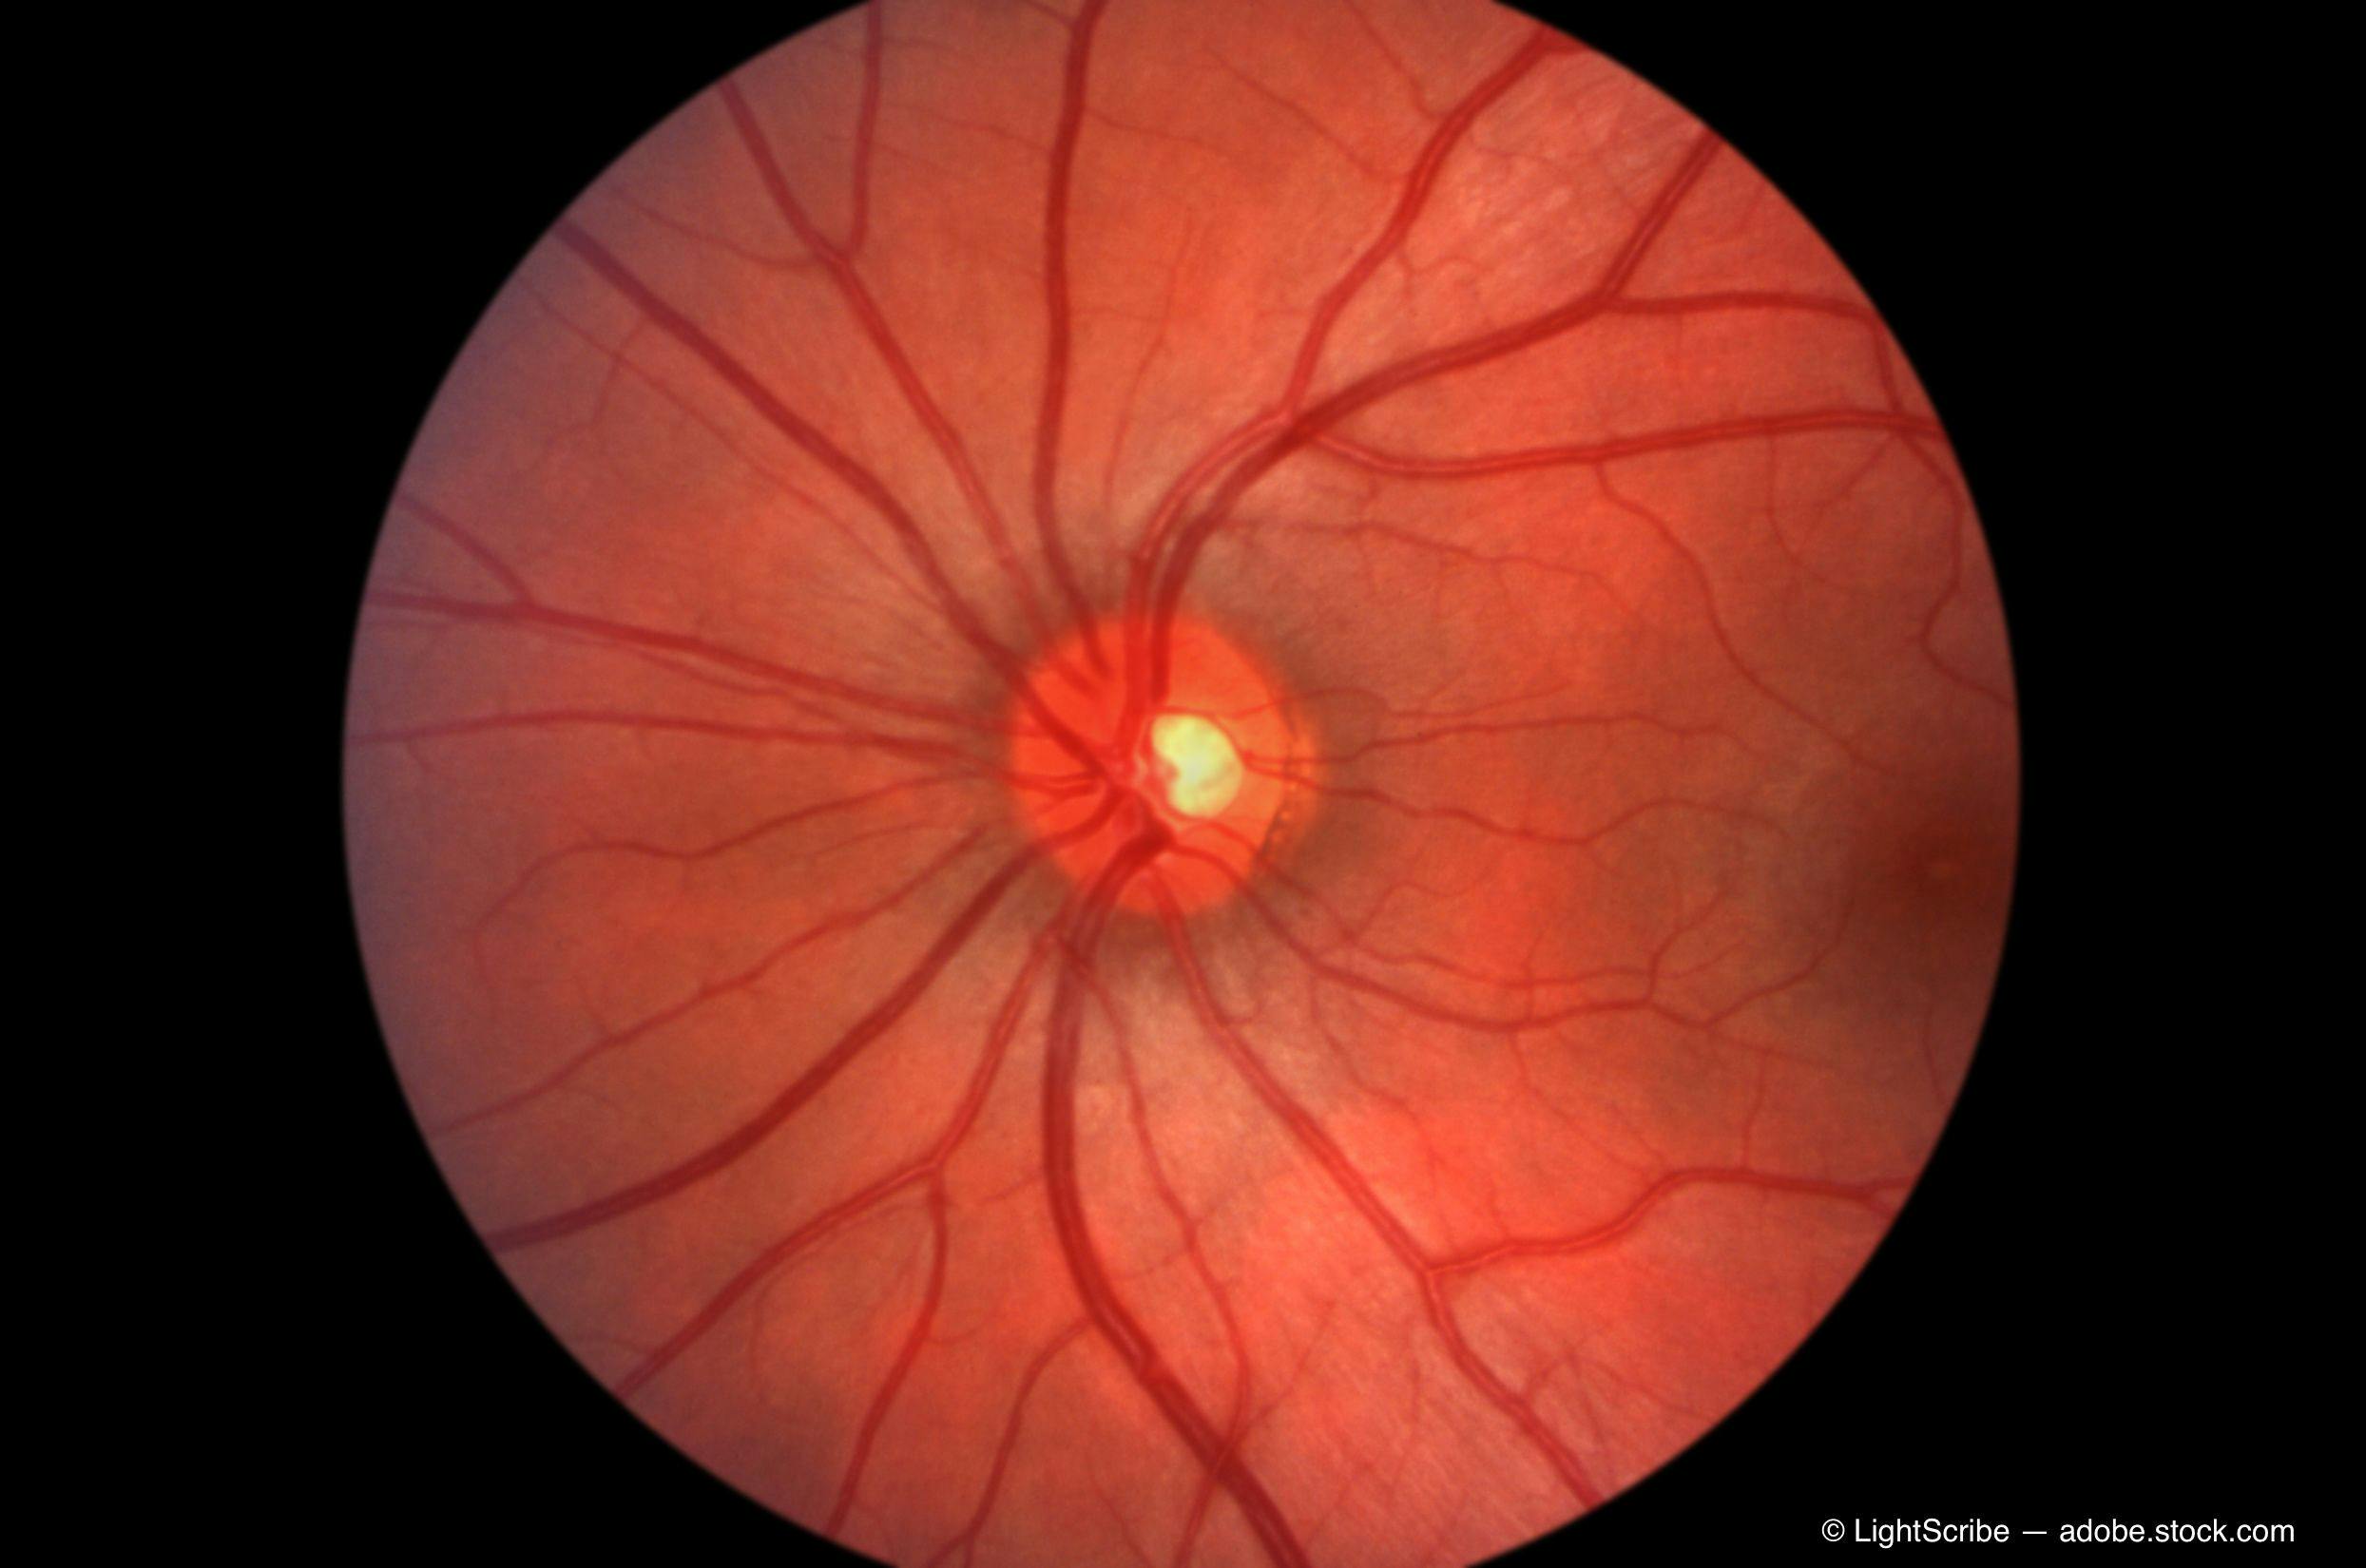 Retina - optic nerve